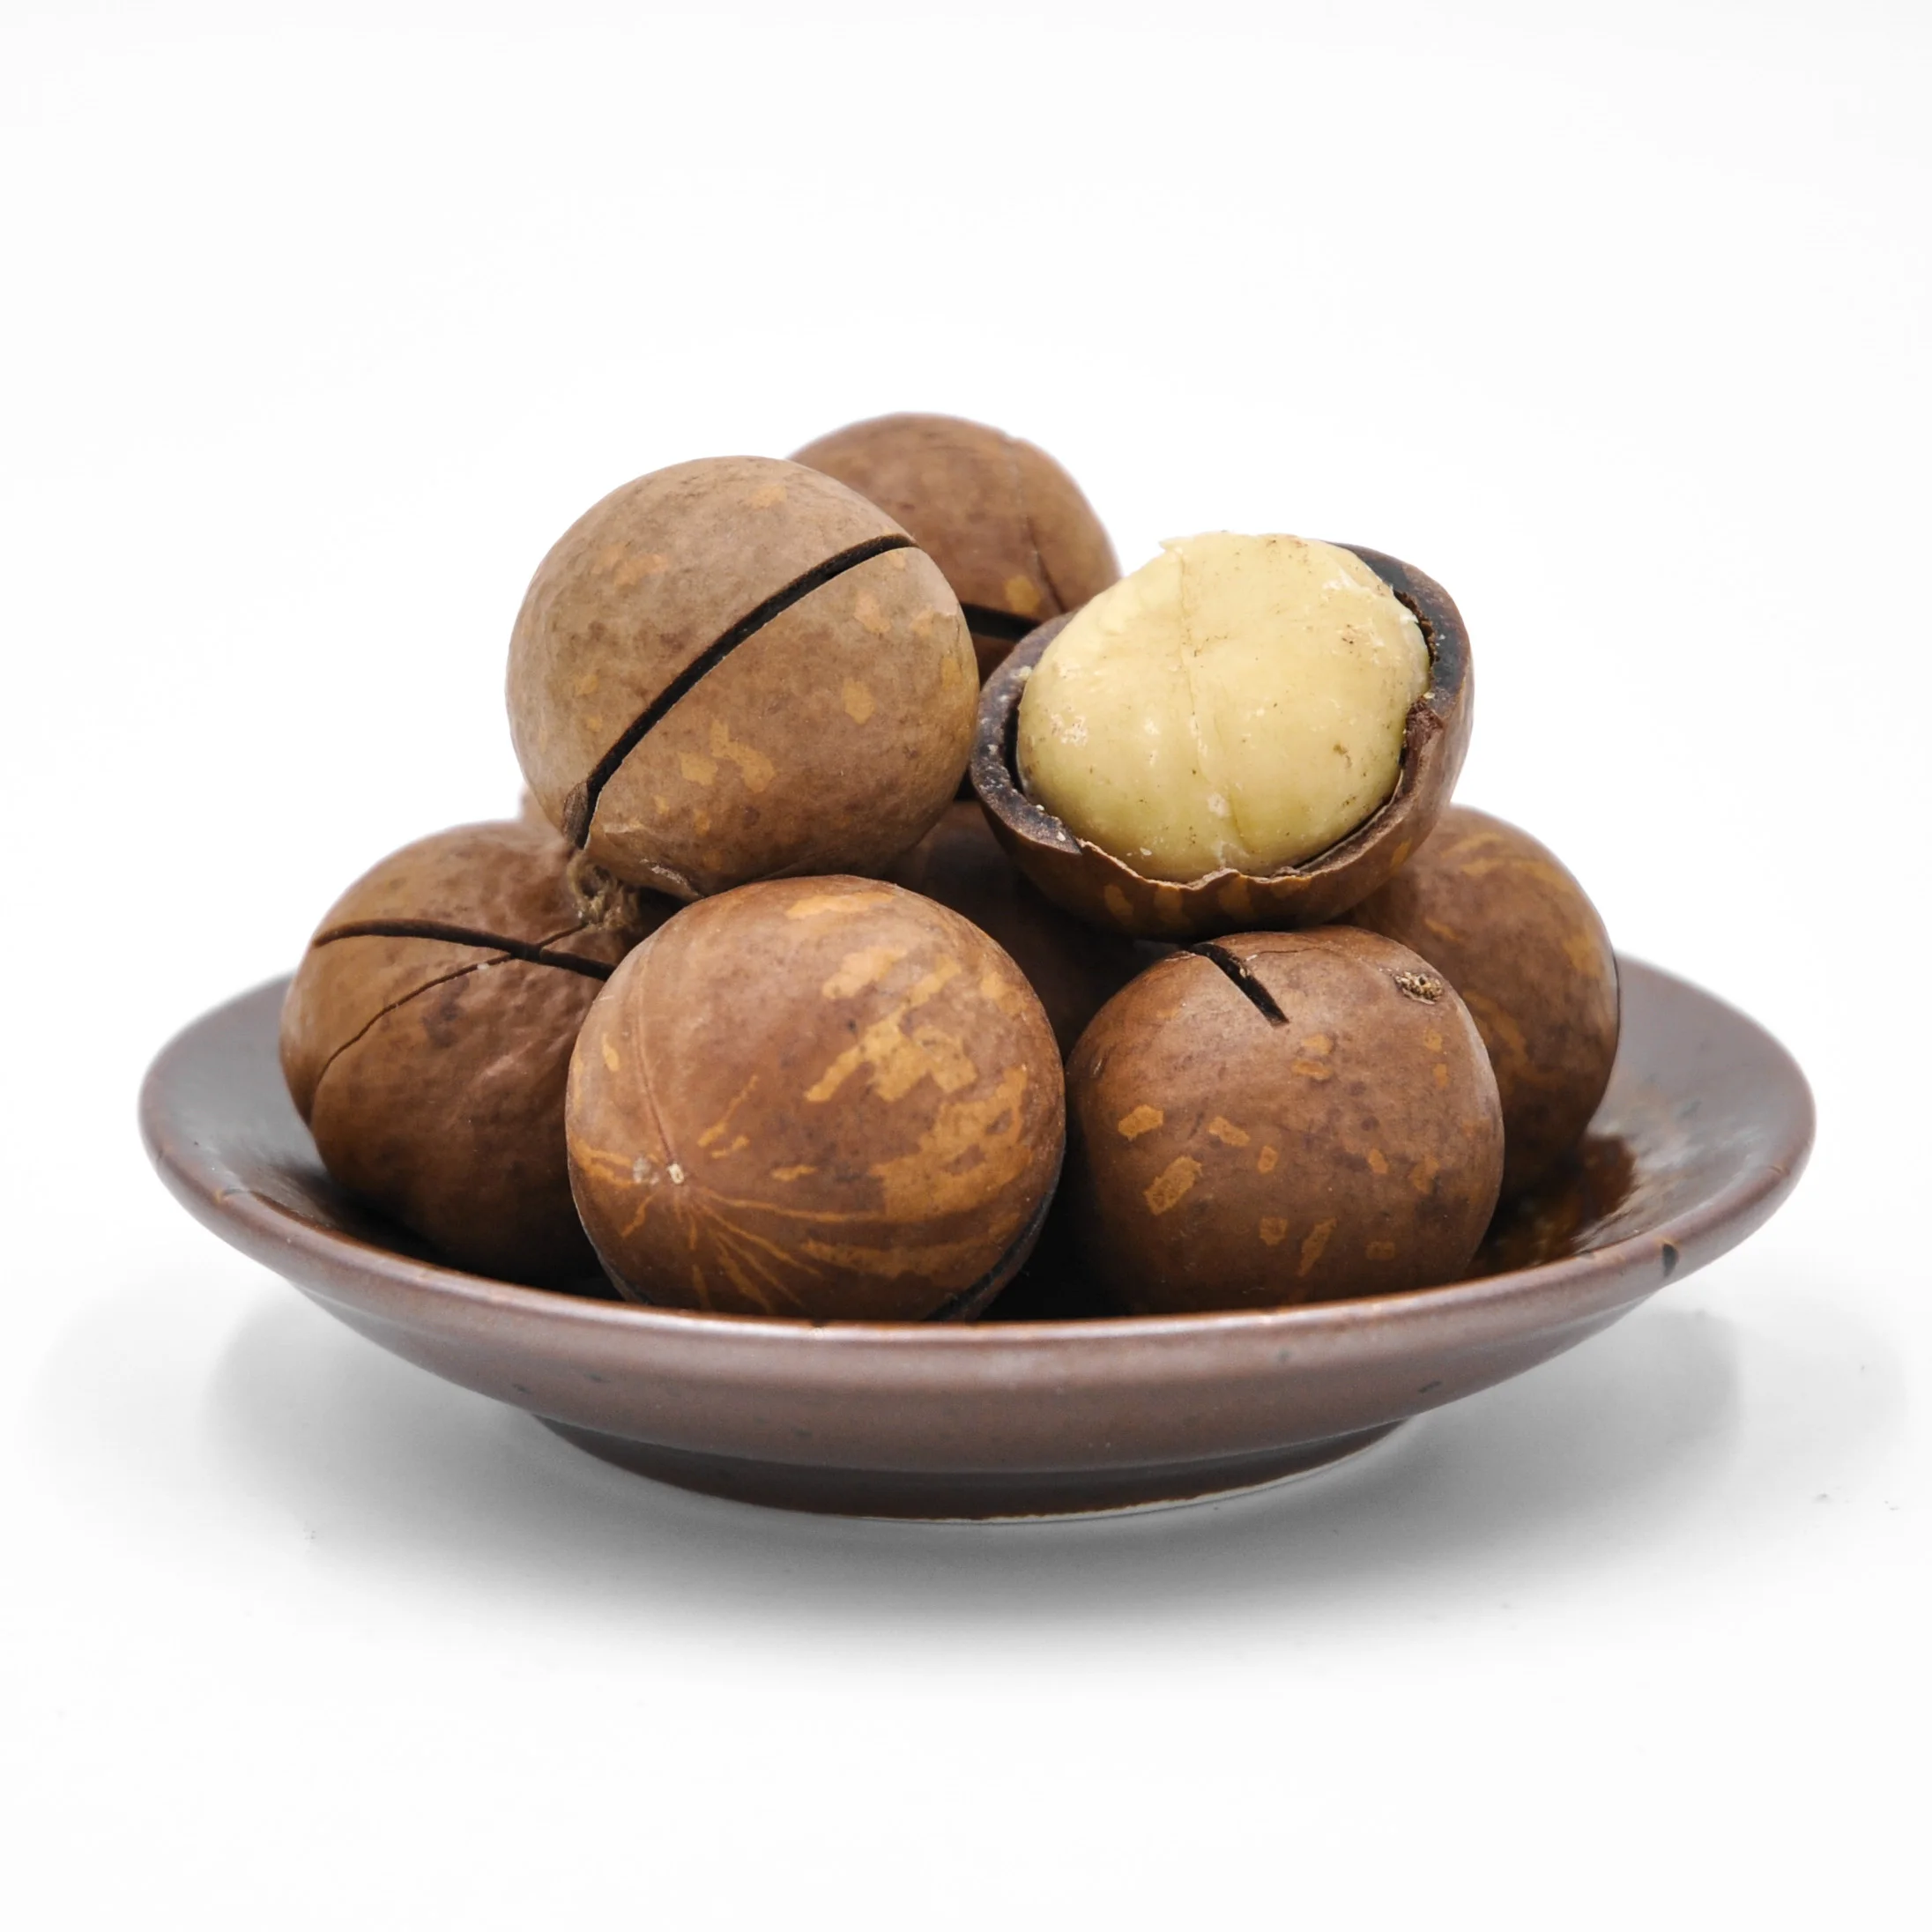 Wholesale Macadamia Nuts Factory Price Top grade Raw Macadamia Nuts